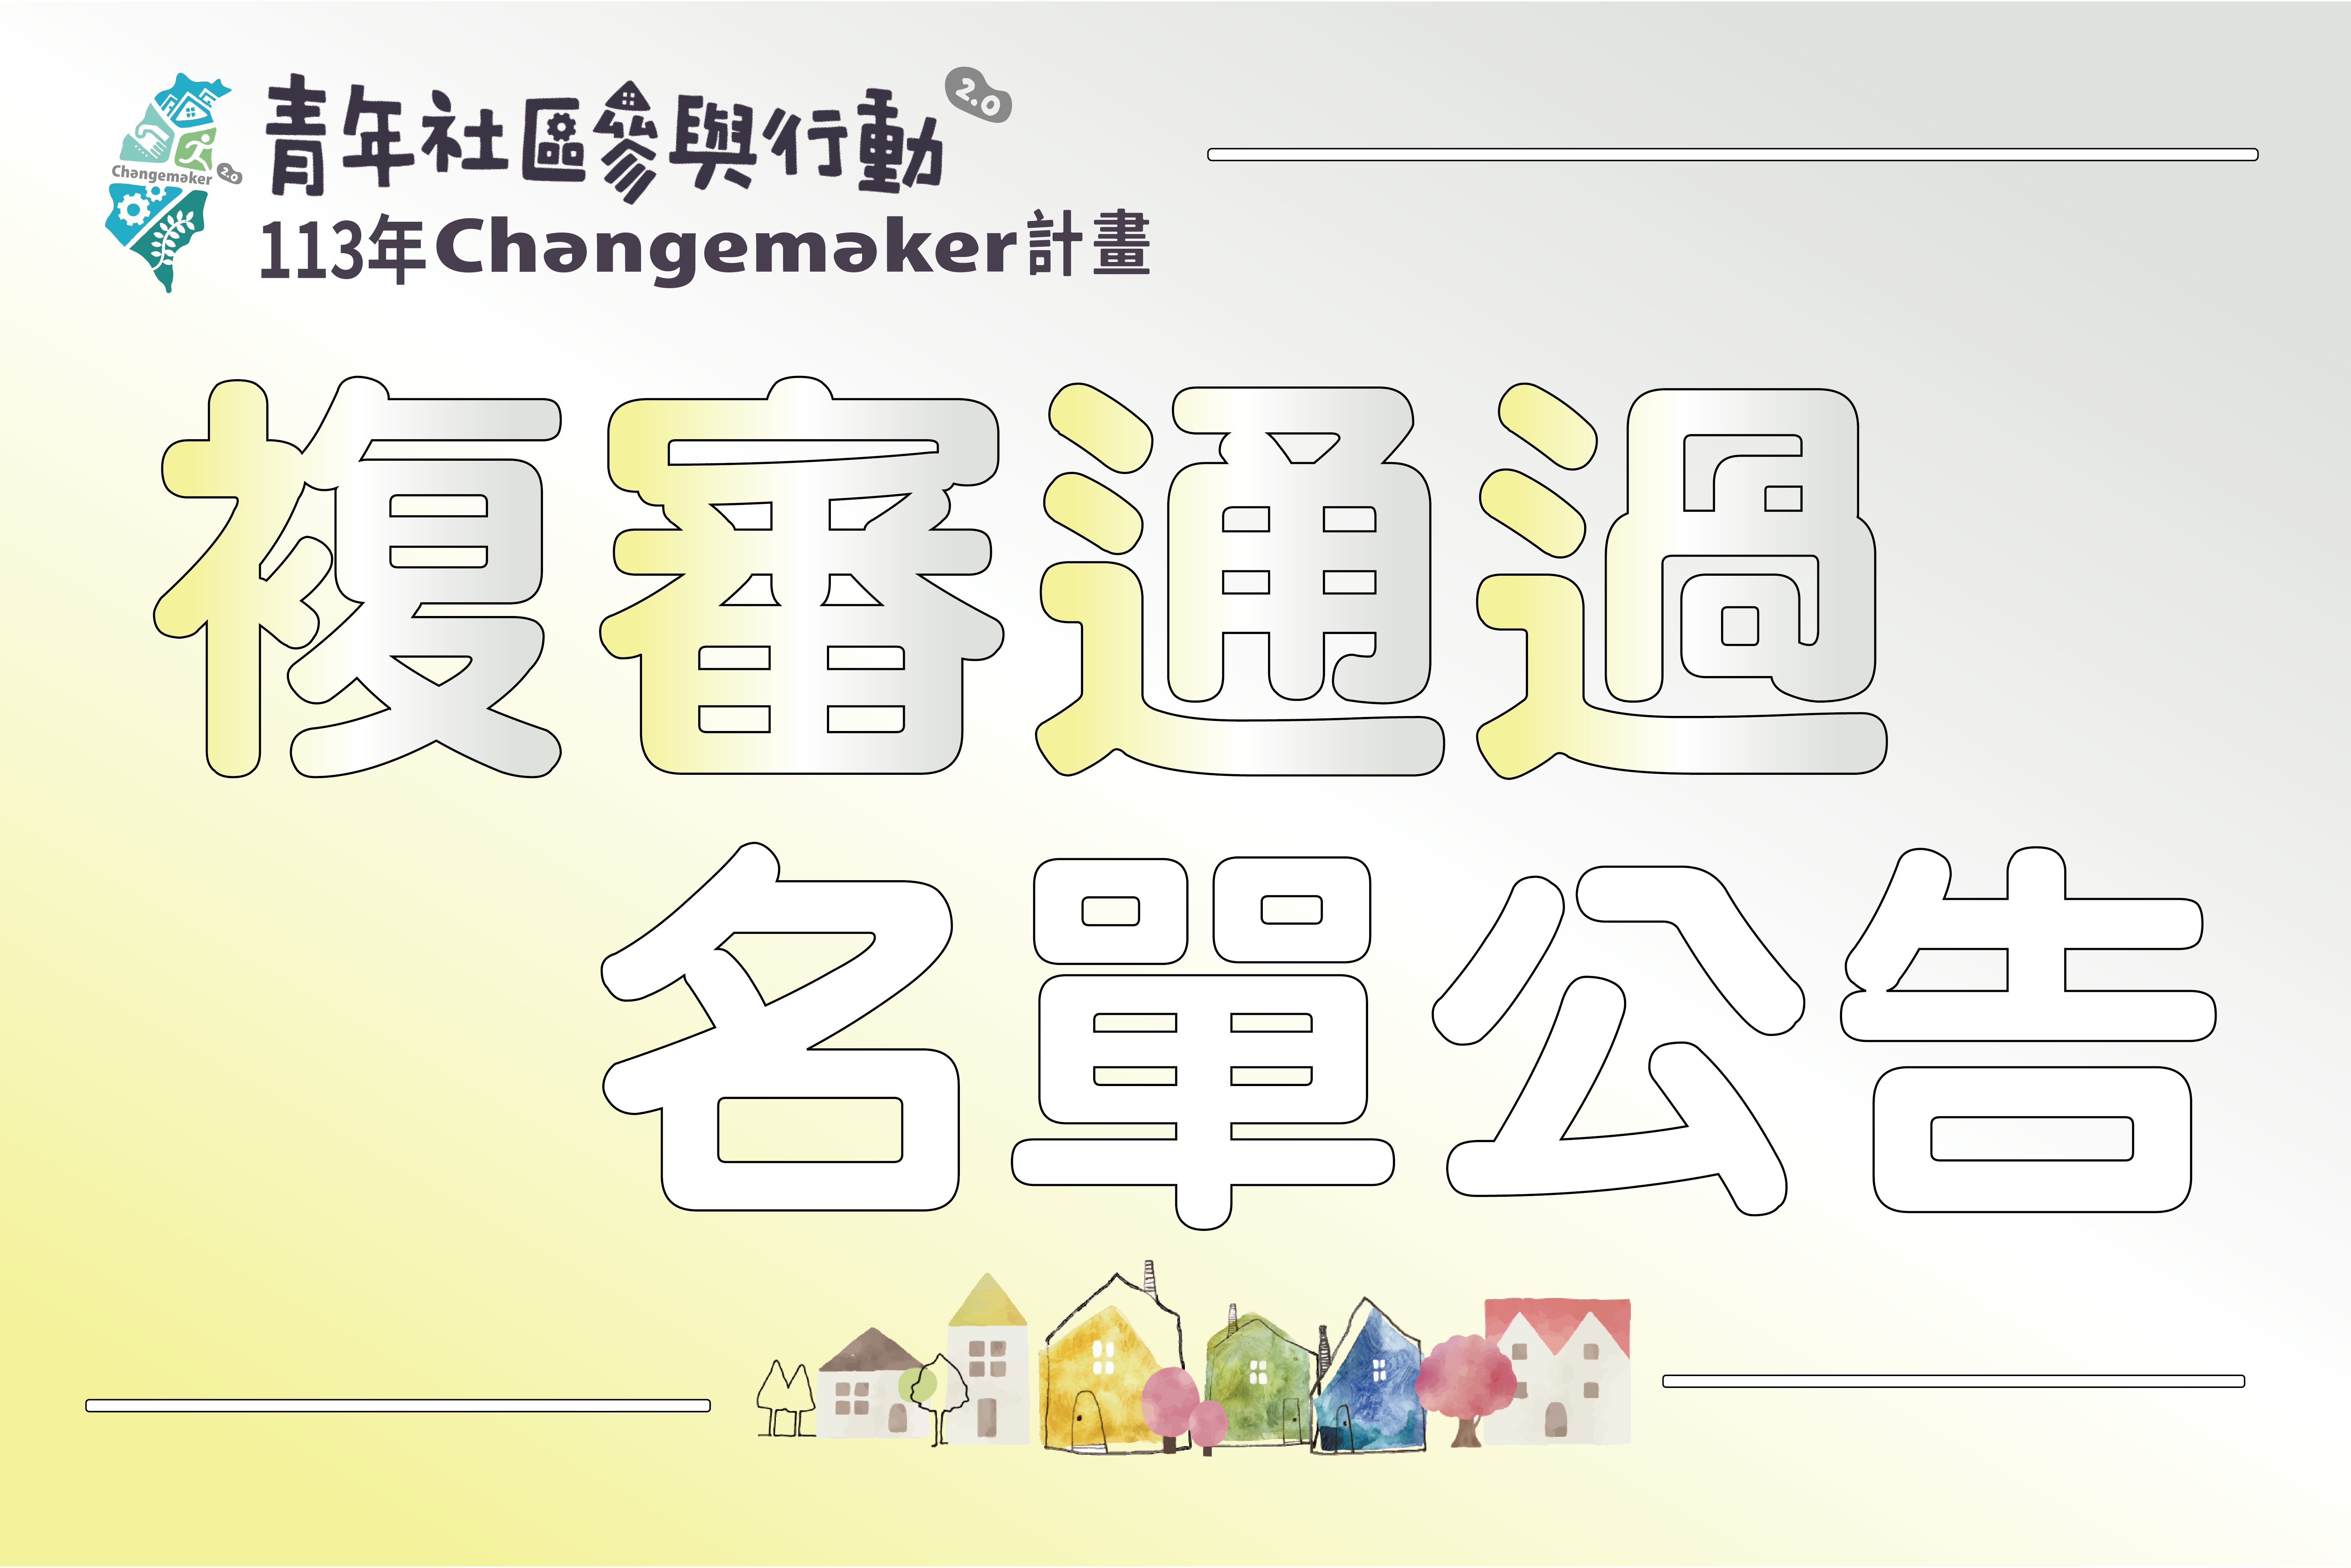 113年青年社區參與行動2.0 Changemaker計畫-複審通過名單圖示